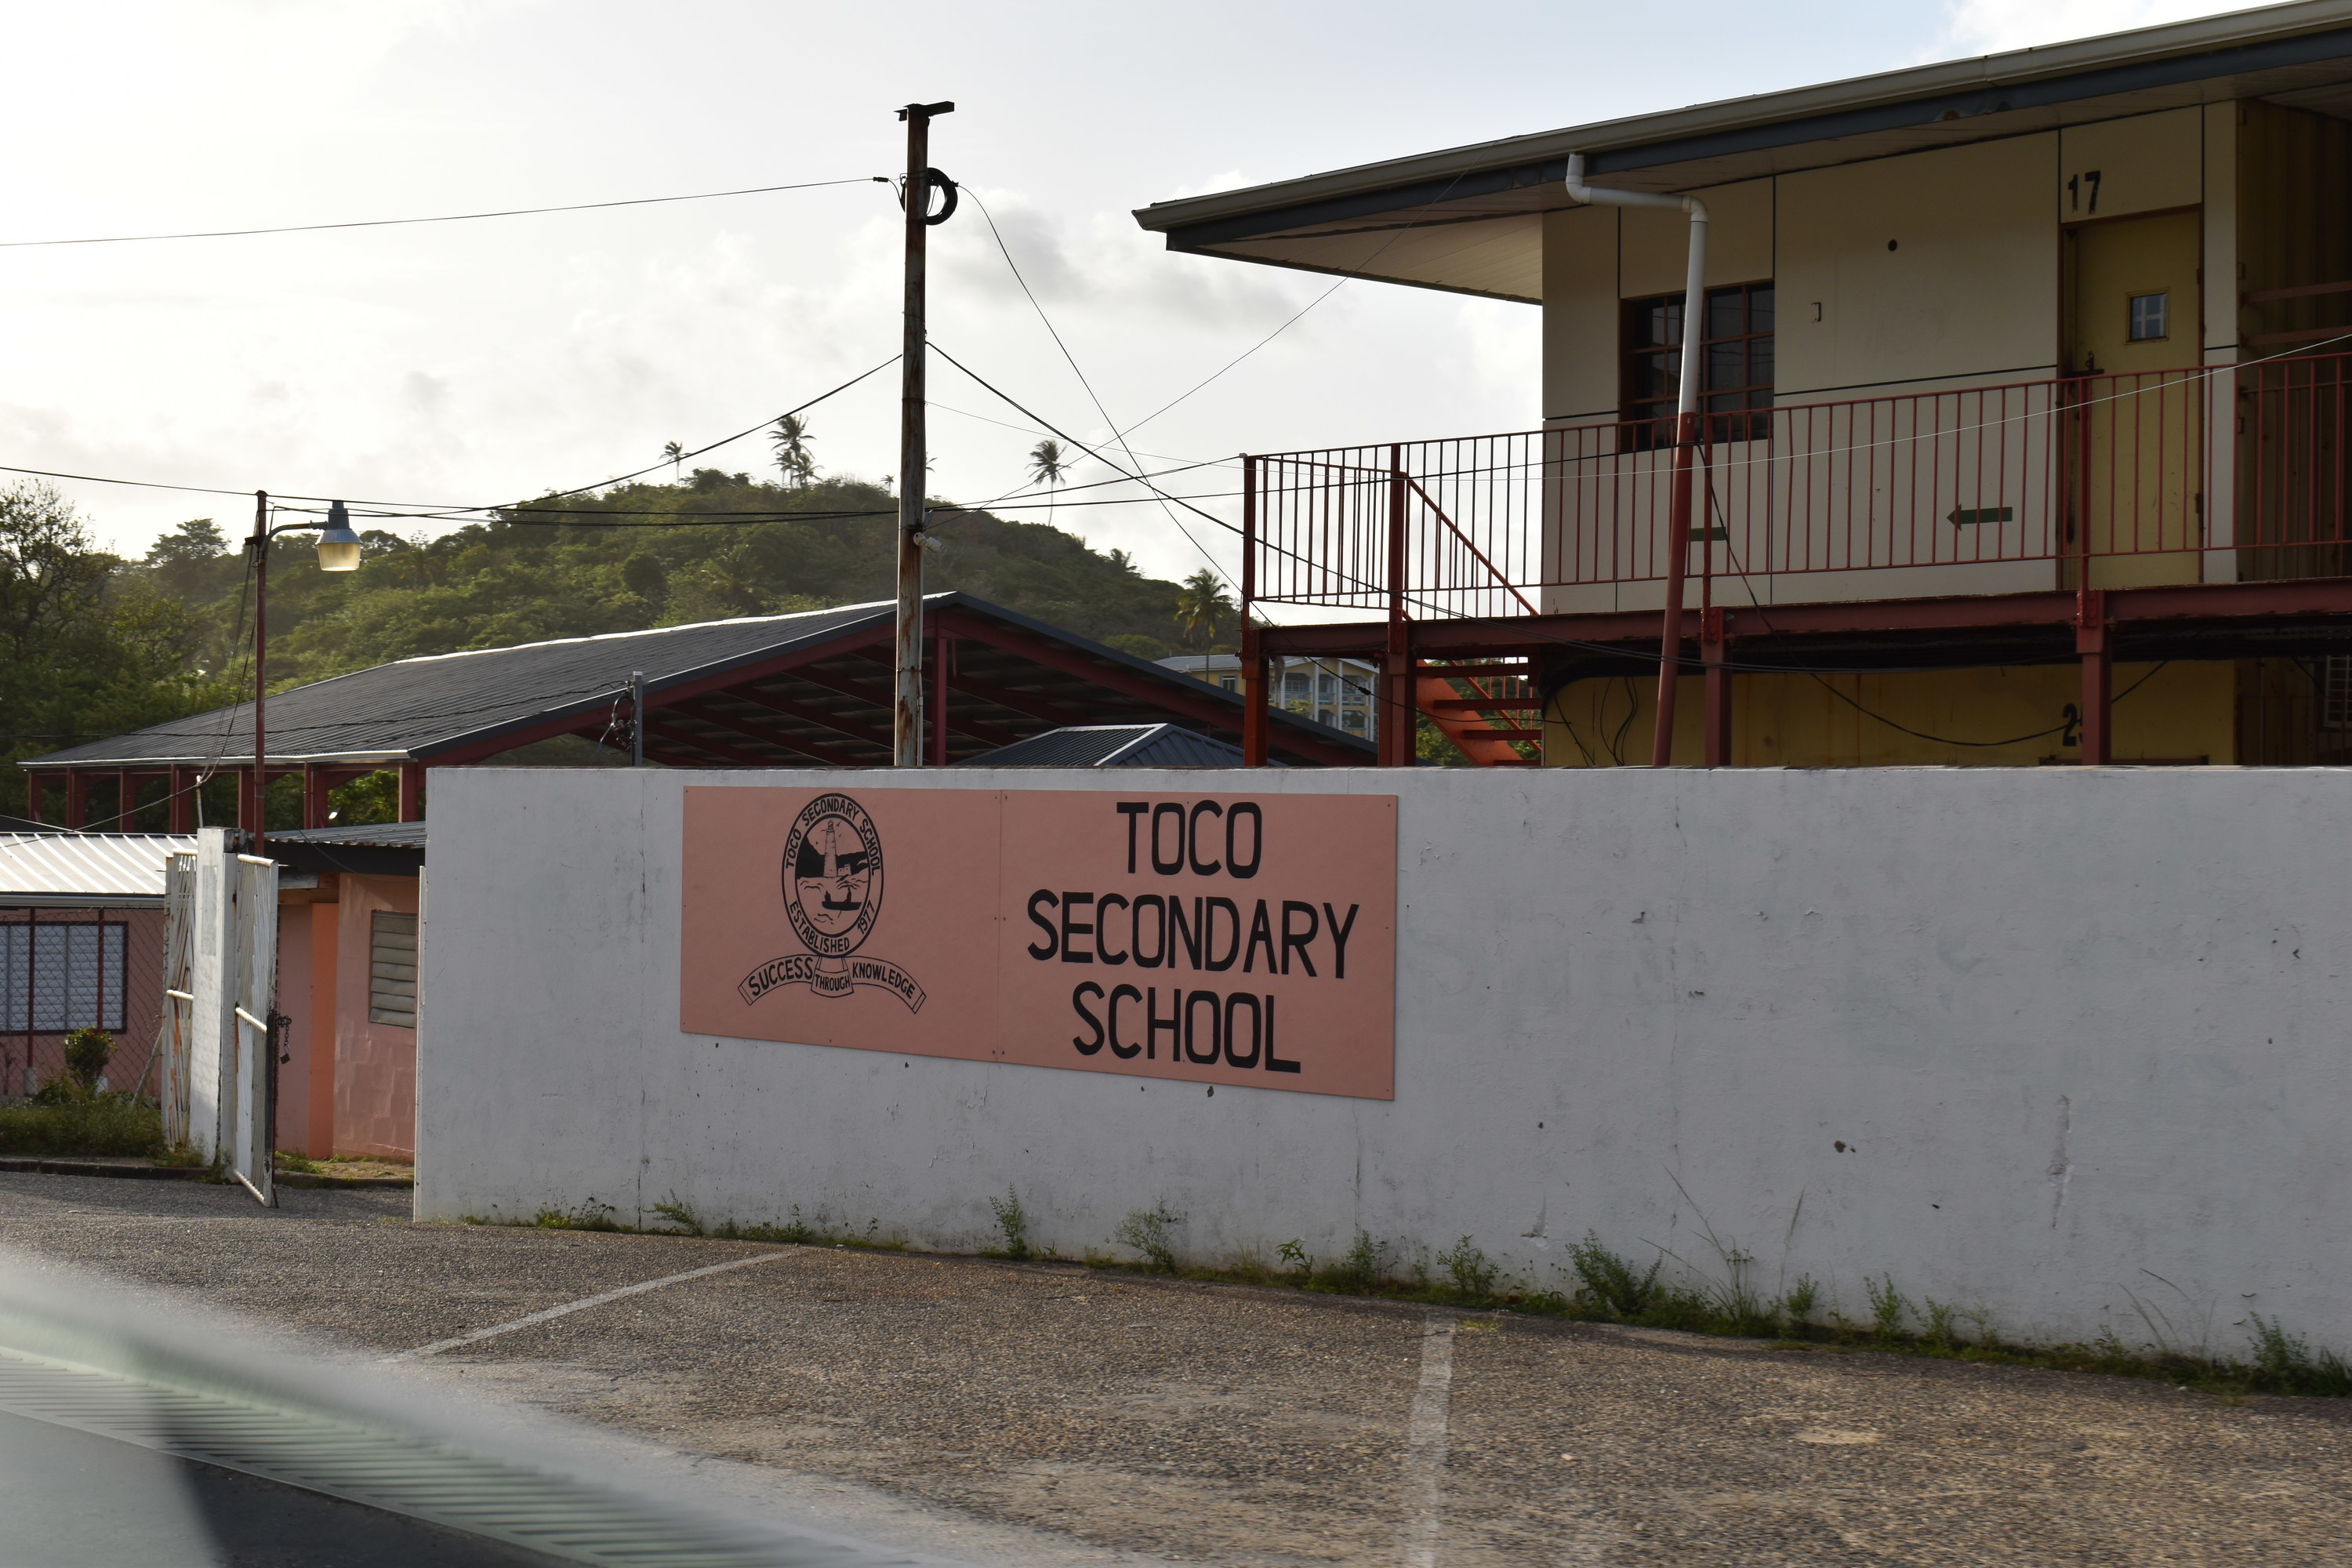 Secondary school in Trinidad